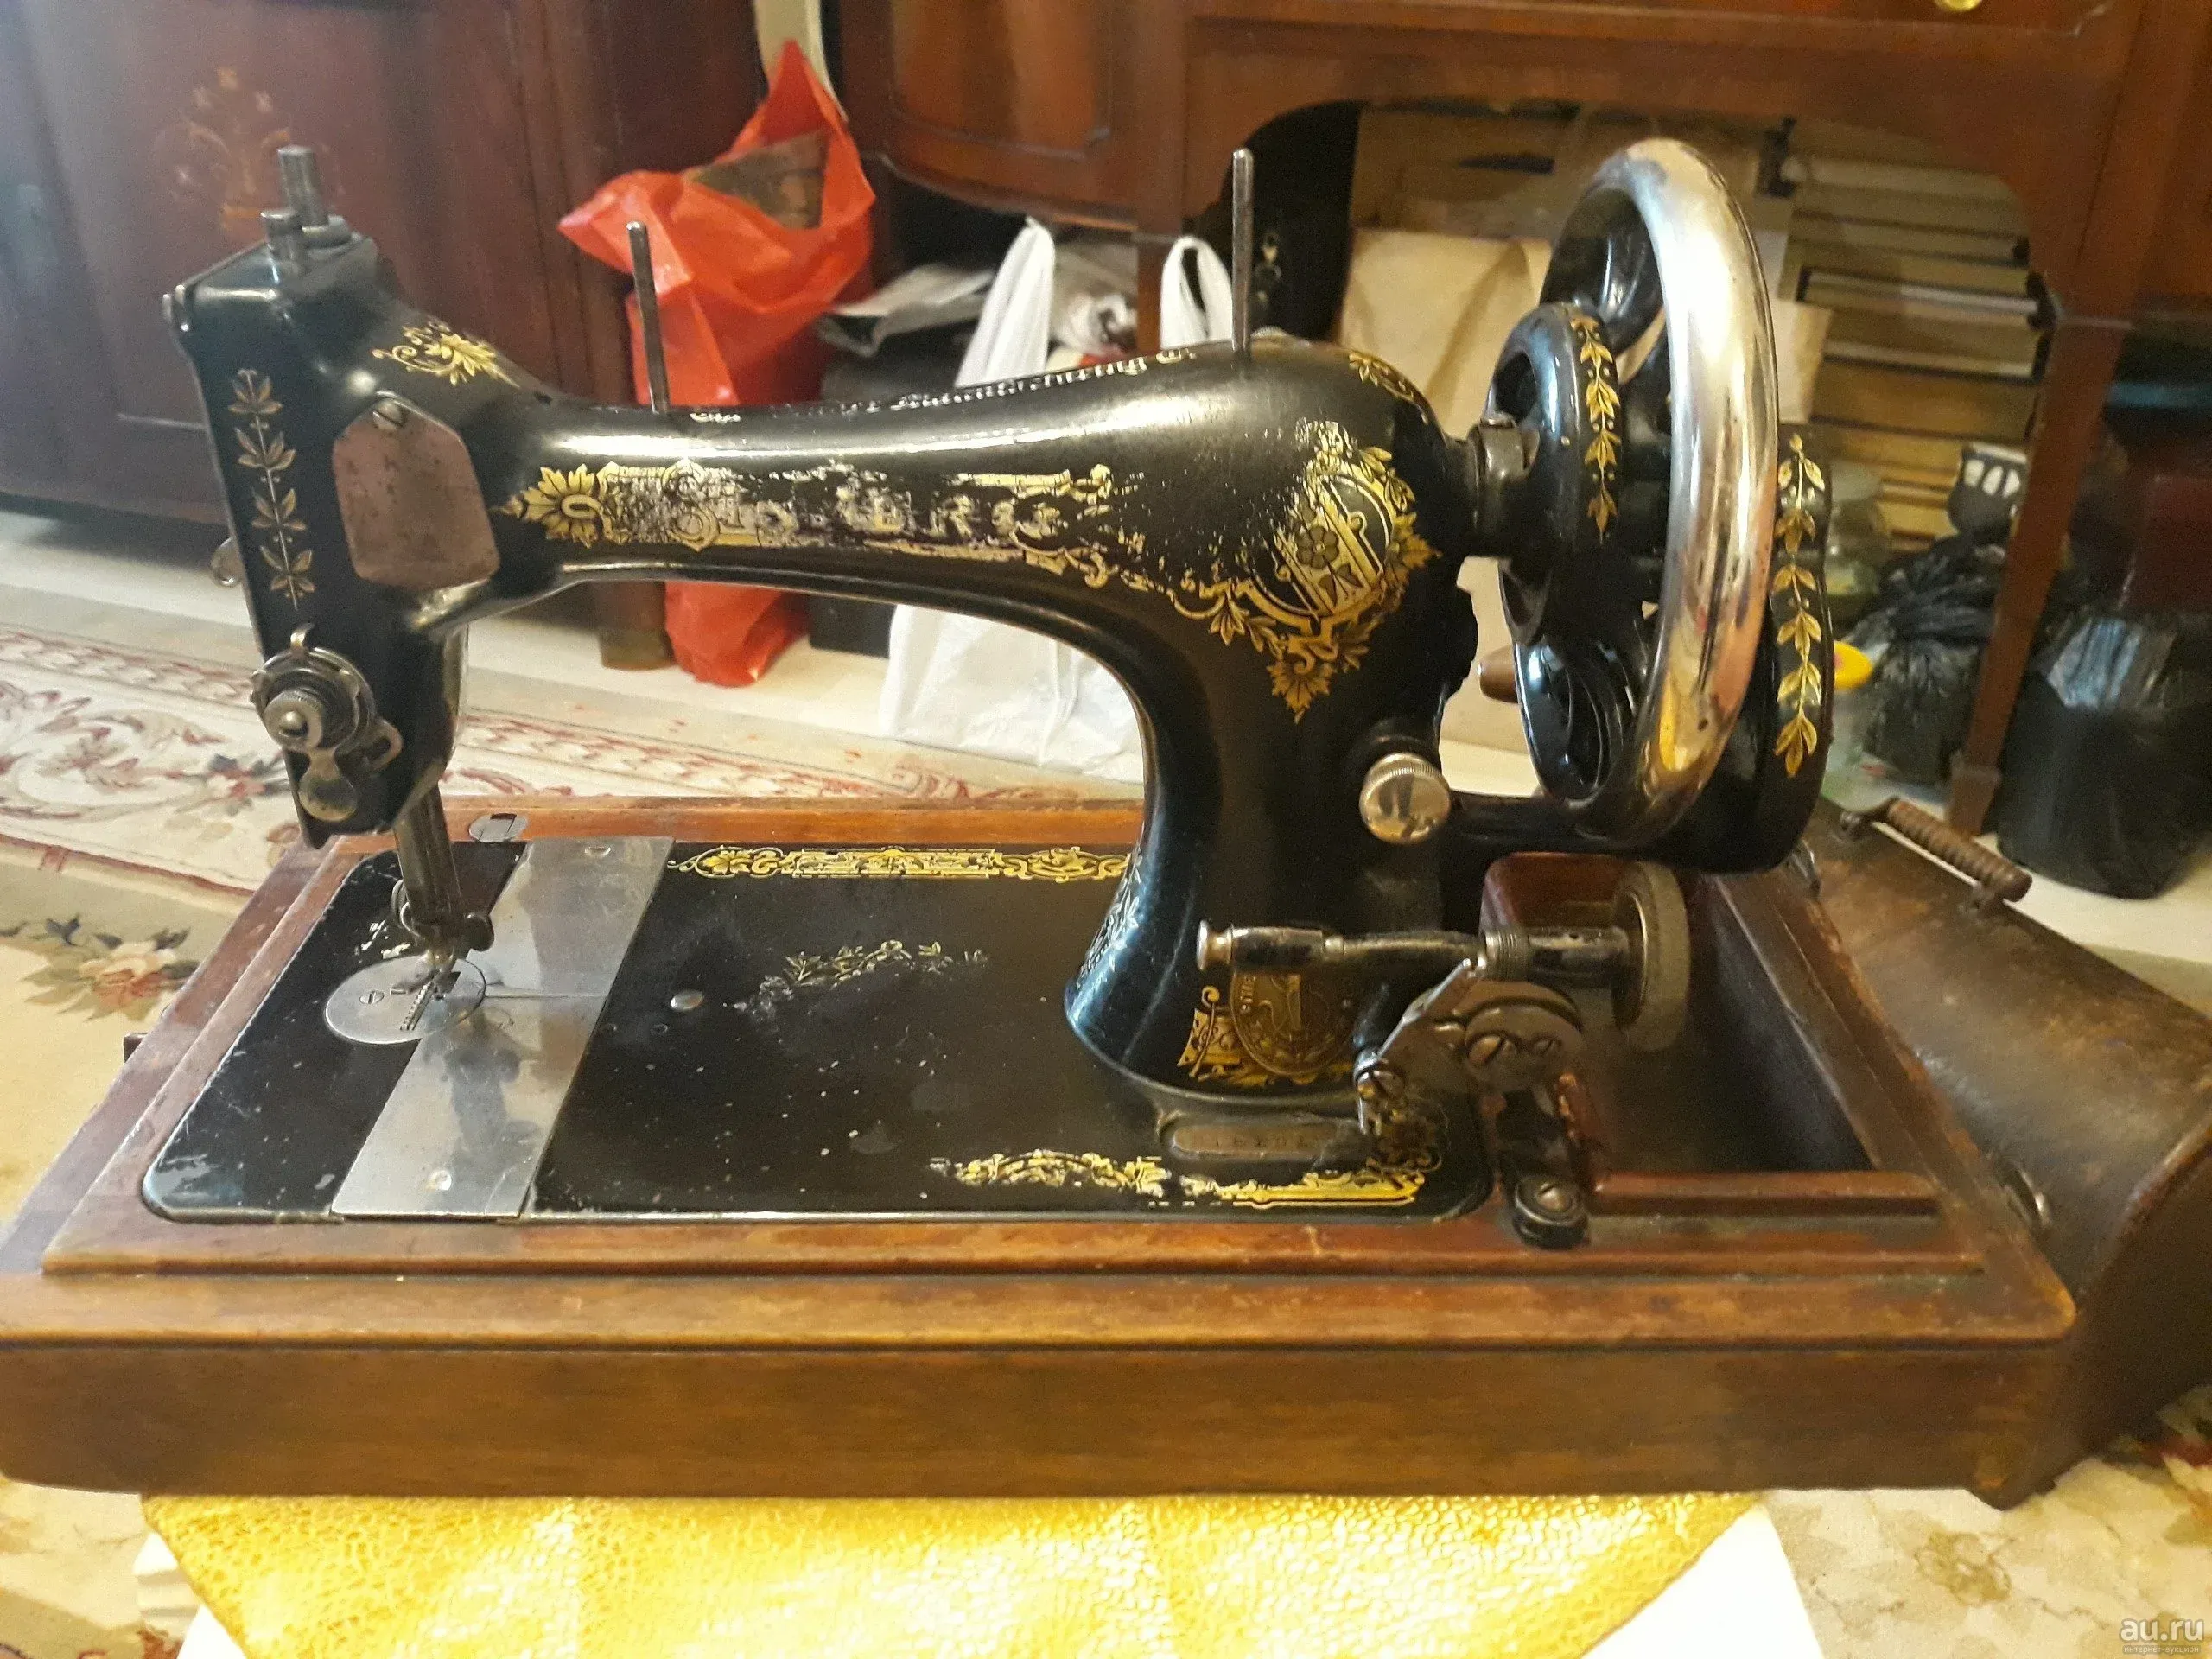 Машинка зингер отзывы. Швейная машина Зингер 19 век. Машинка Зингер 19 века. Юбилейная машинка Зингер 19 век. Швейная машинка Зингер сфинкс.